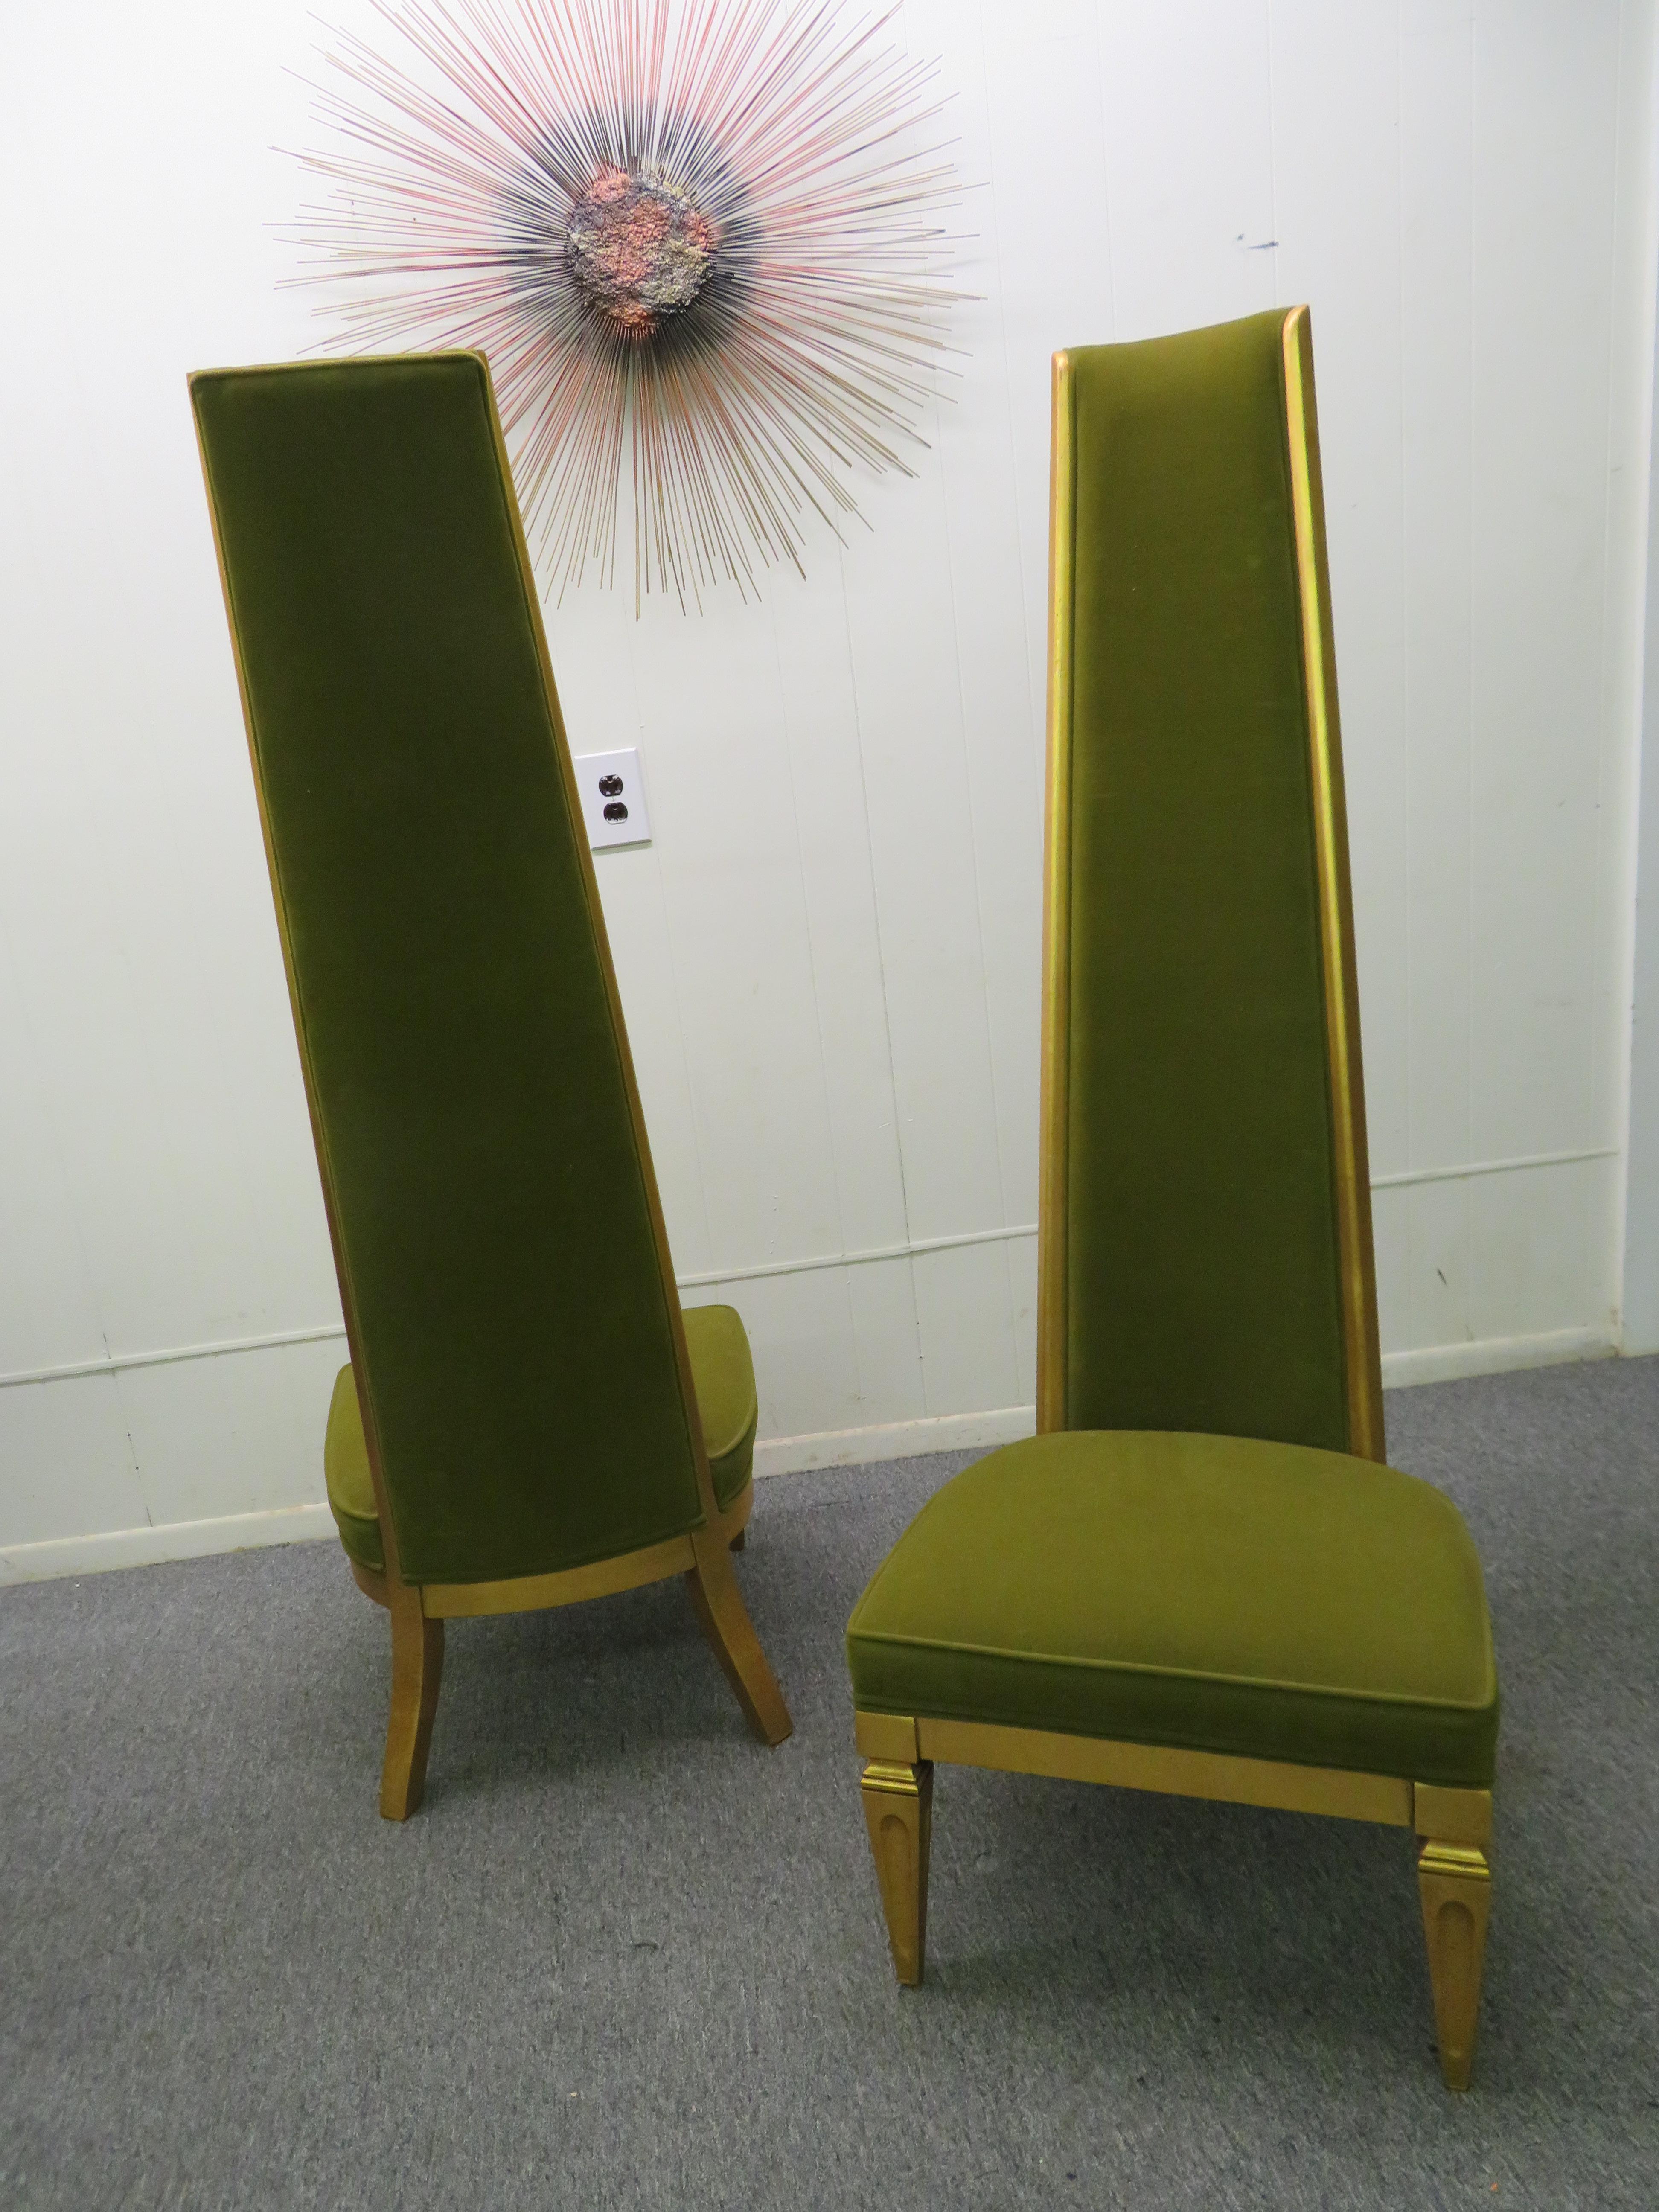 Wunderschönes Paar superhoher Slipper-Sessel. Wir lieben es, wie schlank und hoch die Rückenlehnen sind - sie messen satte 60